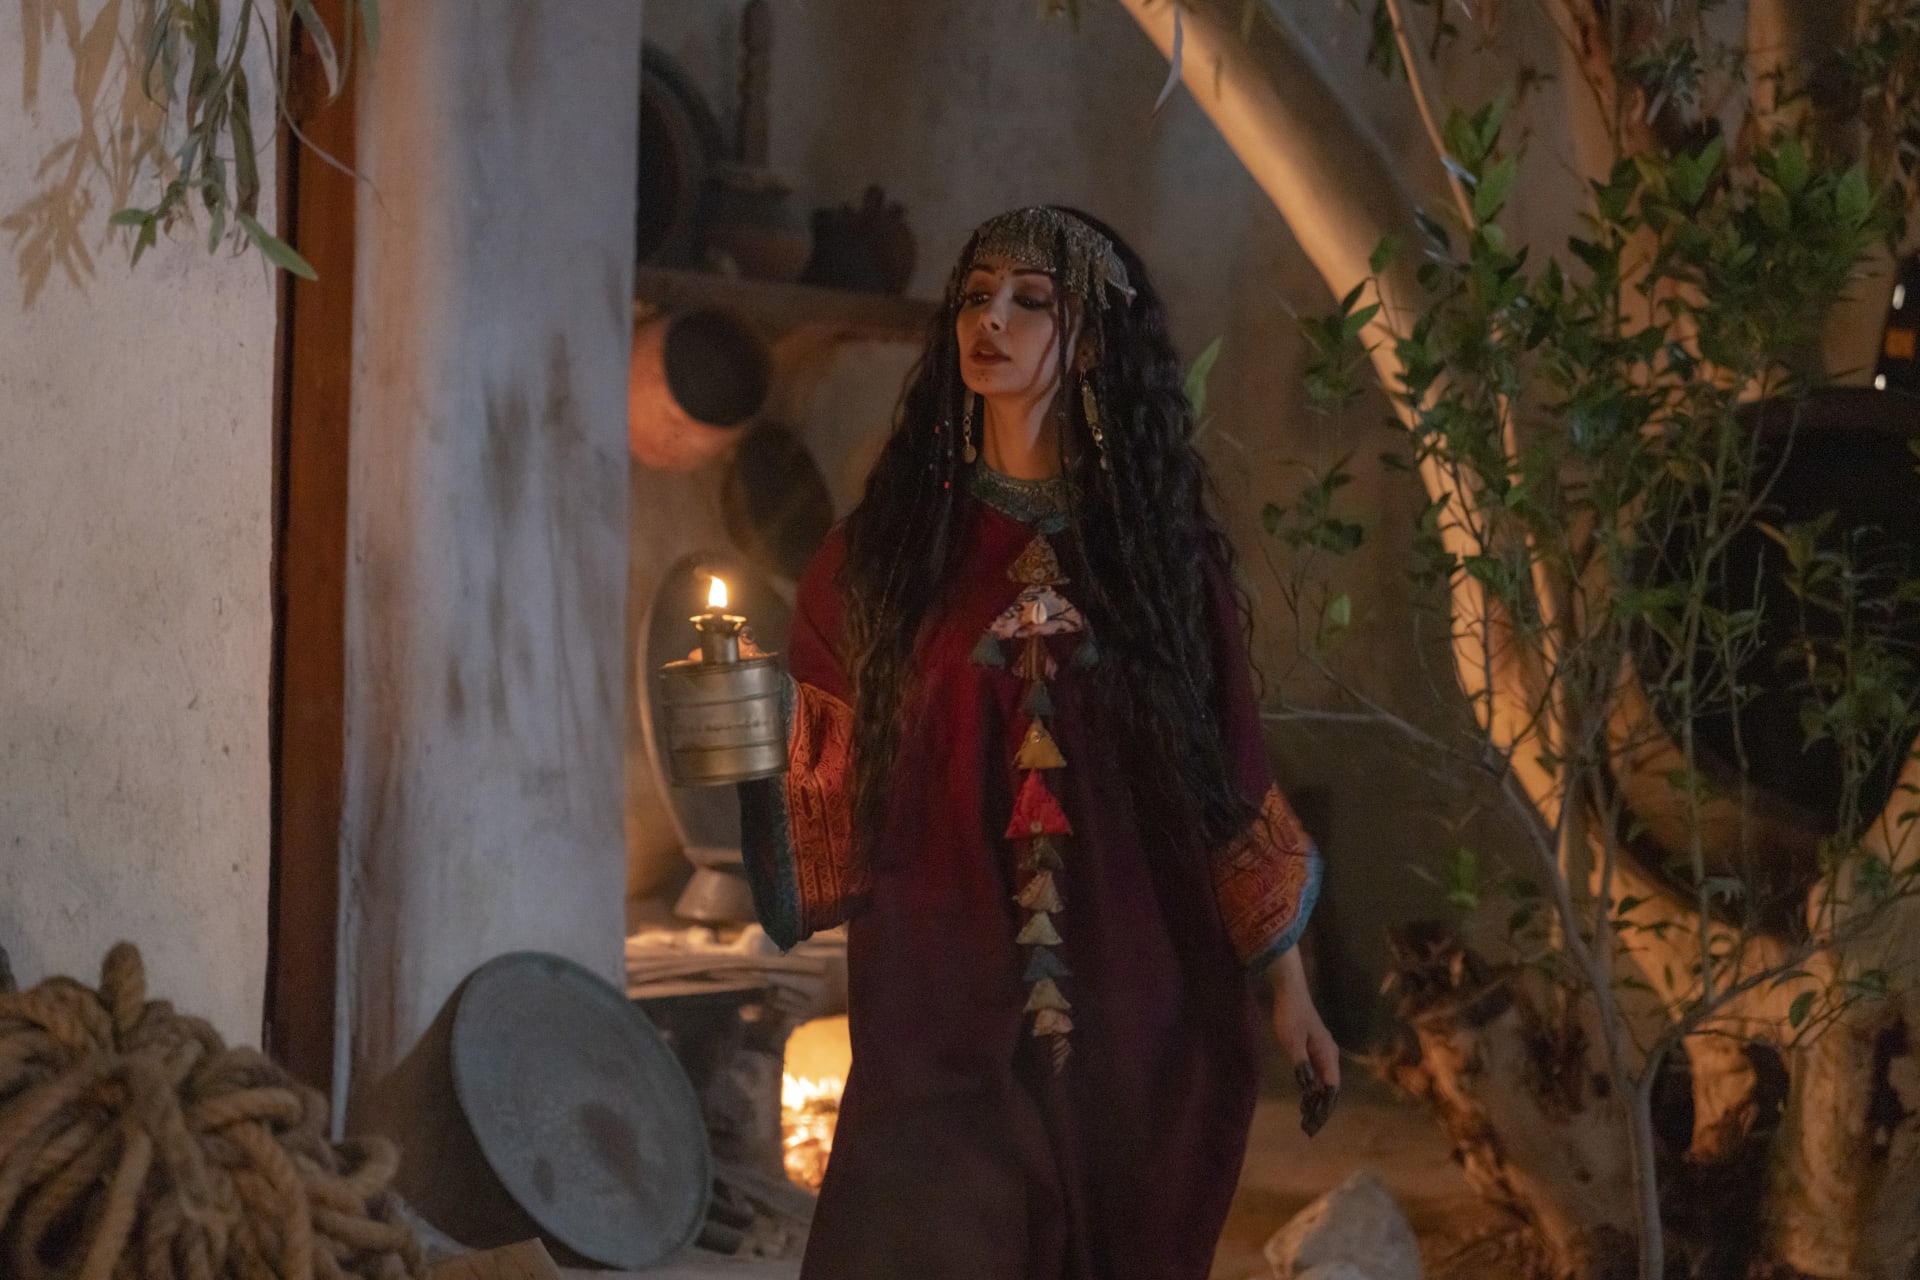 الممثلة منى حسين تقدم دور وجدان بمسلسل "زمن العجاج"